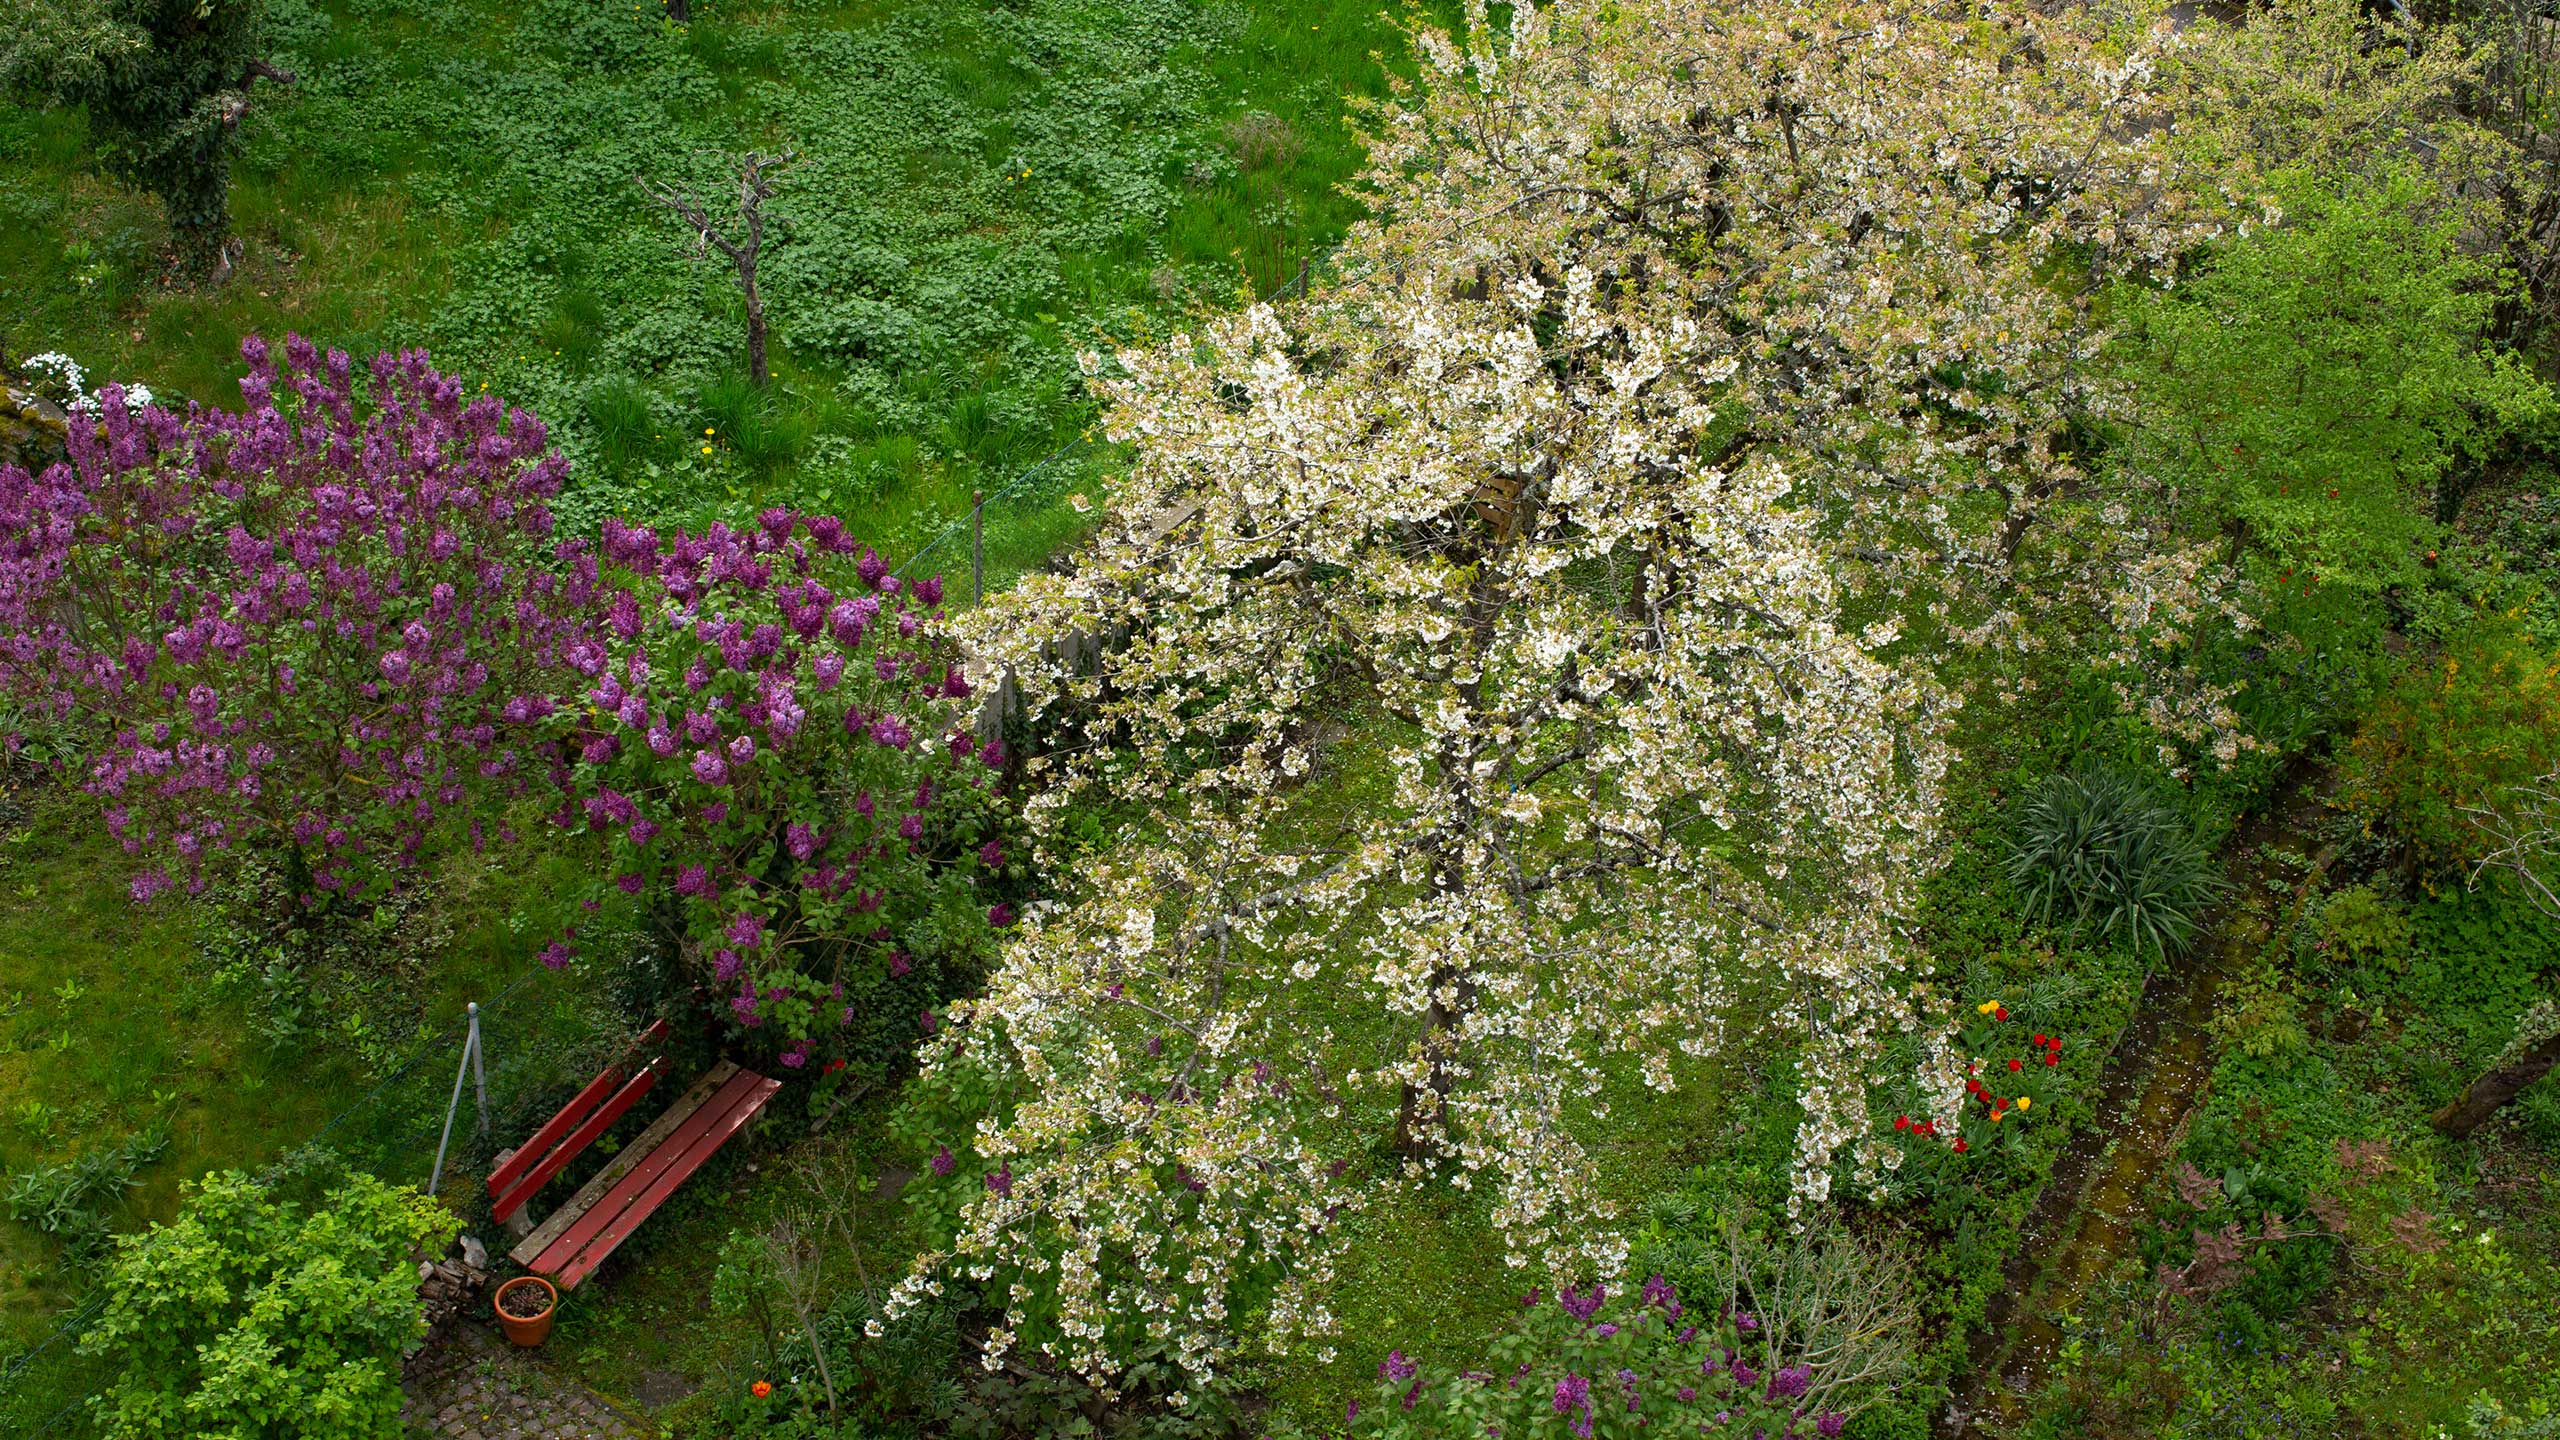 Blick in den Hausgarten (Vogelperspektive). Ein violetter Flieder und die beiden Quitten stehen in voller Blüte. Das Gras ist saftig grün. Die ersten Tulpen (rot und gelb) strecken ihre Köpfchen zur Sonne.. Bild: cc Franziska Köppe | madiko